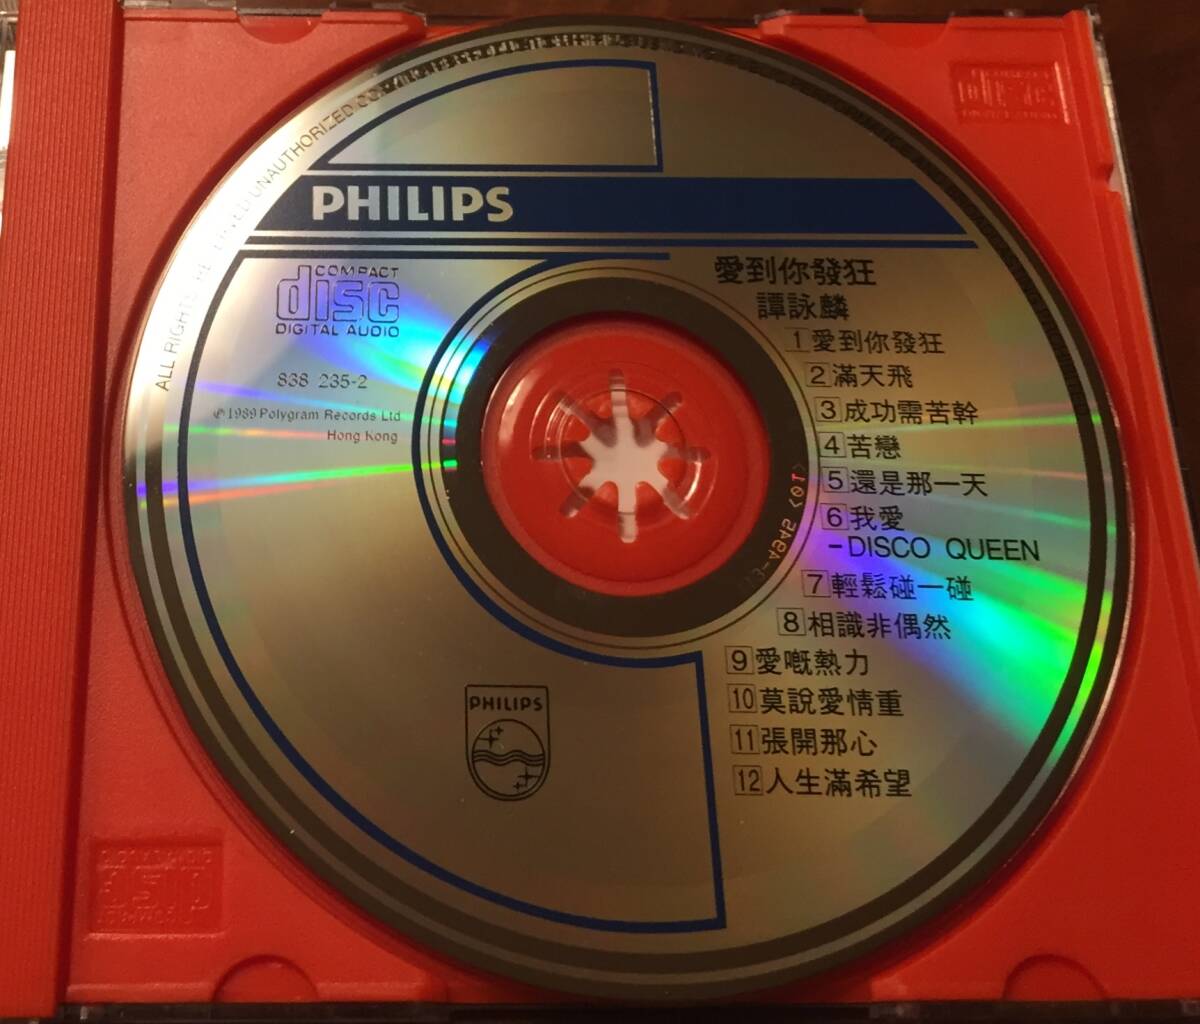  прекрасный товар ценный первоначальная версия CD-... Alain *tamAlan Tam*1989 год [ love .. сумасшествие *. красота золотой - белый золотой серия ряд ]Philips* стоимость доставки 230 иен ~